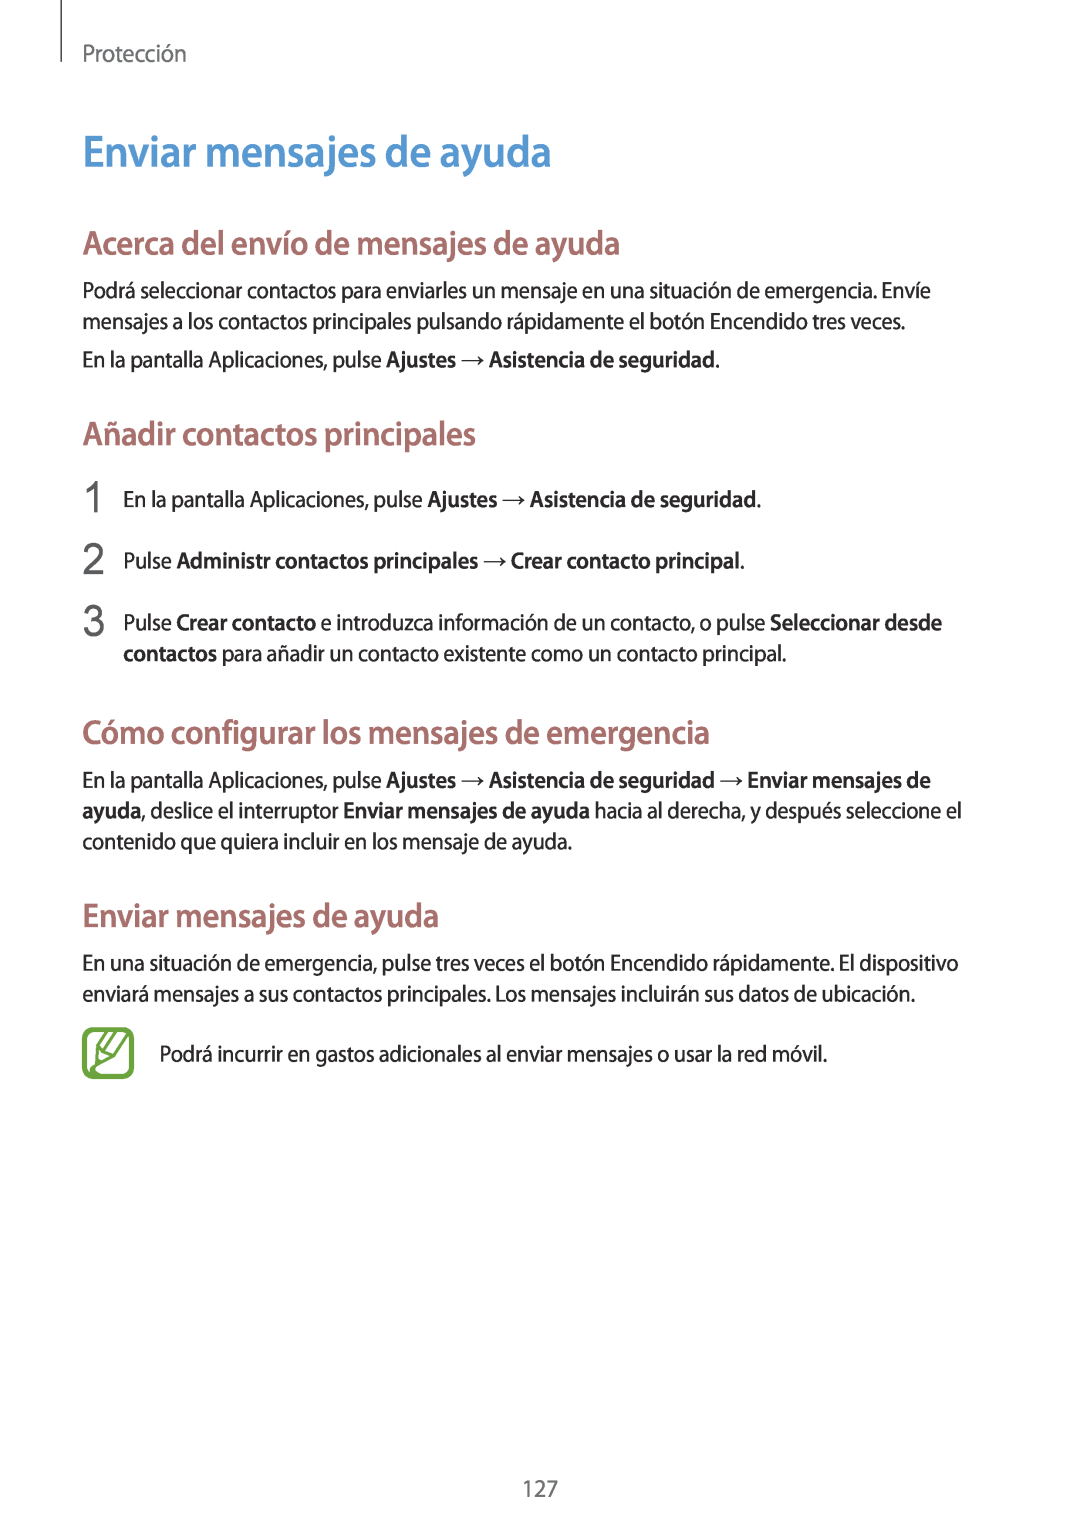 Samsung SM-G901FZKADBT manual Enviar mensajes de ayuda, Acerca del envío de mensajes de ayuda, Añadir contactos principales 